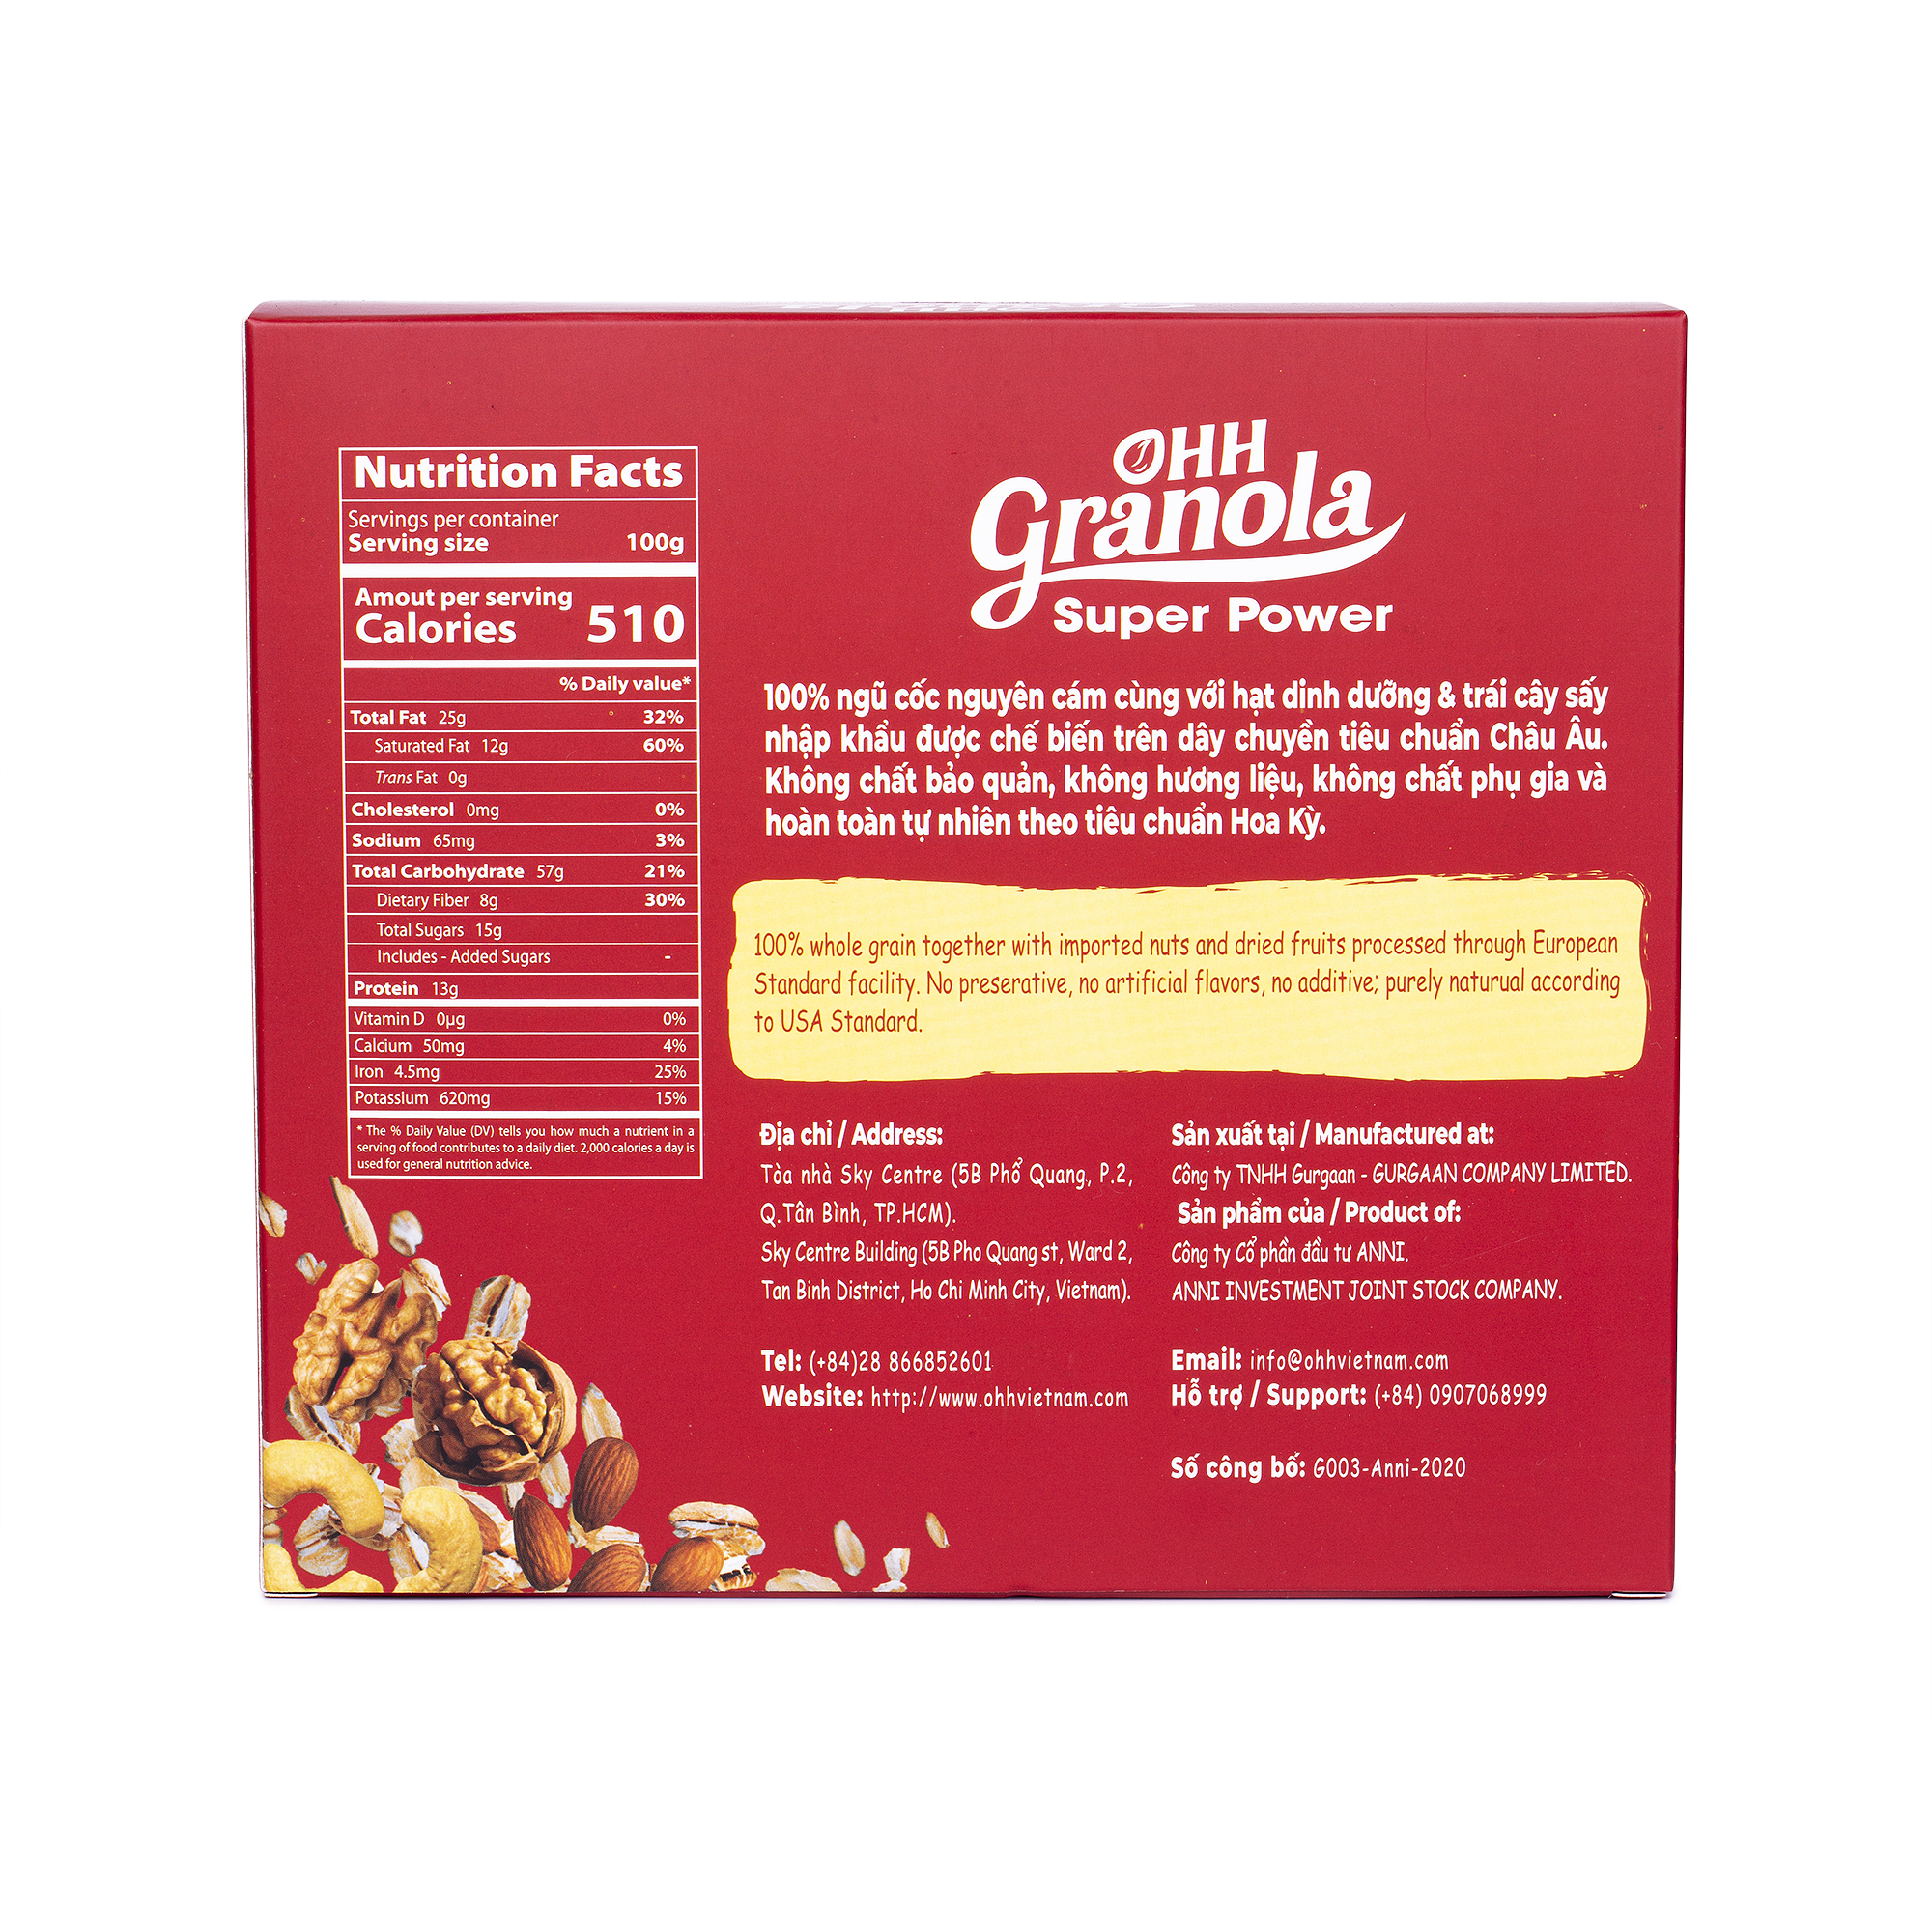 Giảm Cân Ngũ Cốc Tăng Cơ Giàu Năng Lượng  Chocolate Đen - Super Power (Ohh - Granola) Tiêu Chuẩn FDA Hoa Kỳ, Hộp 250g